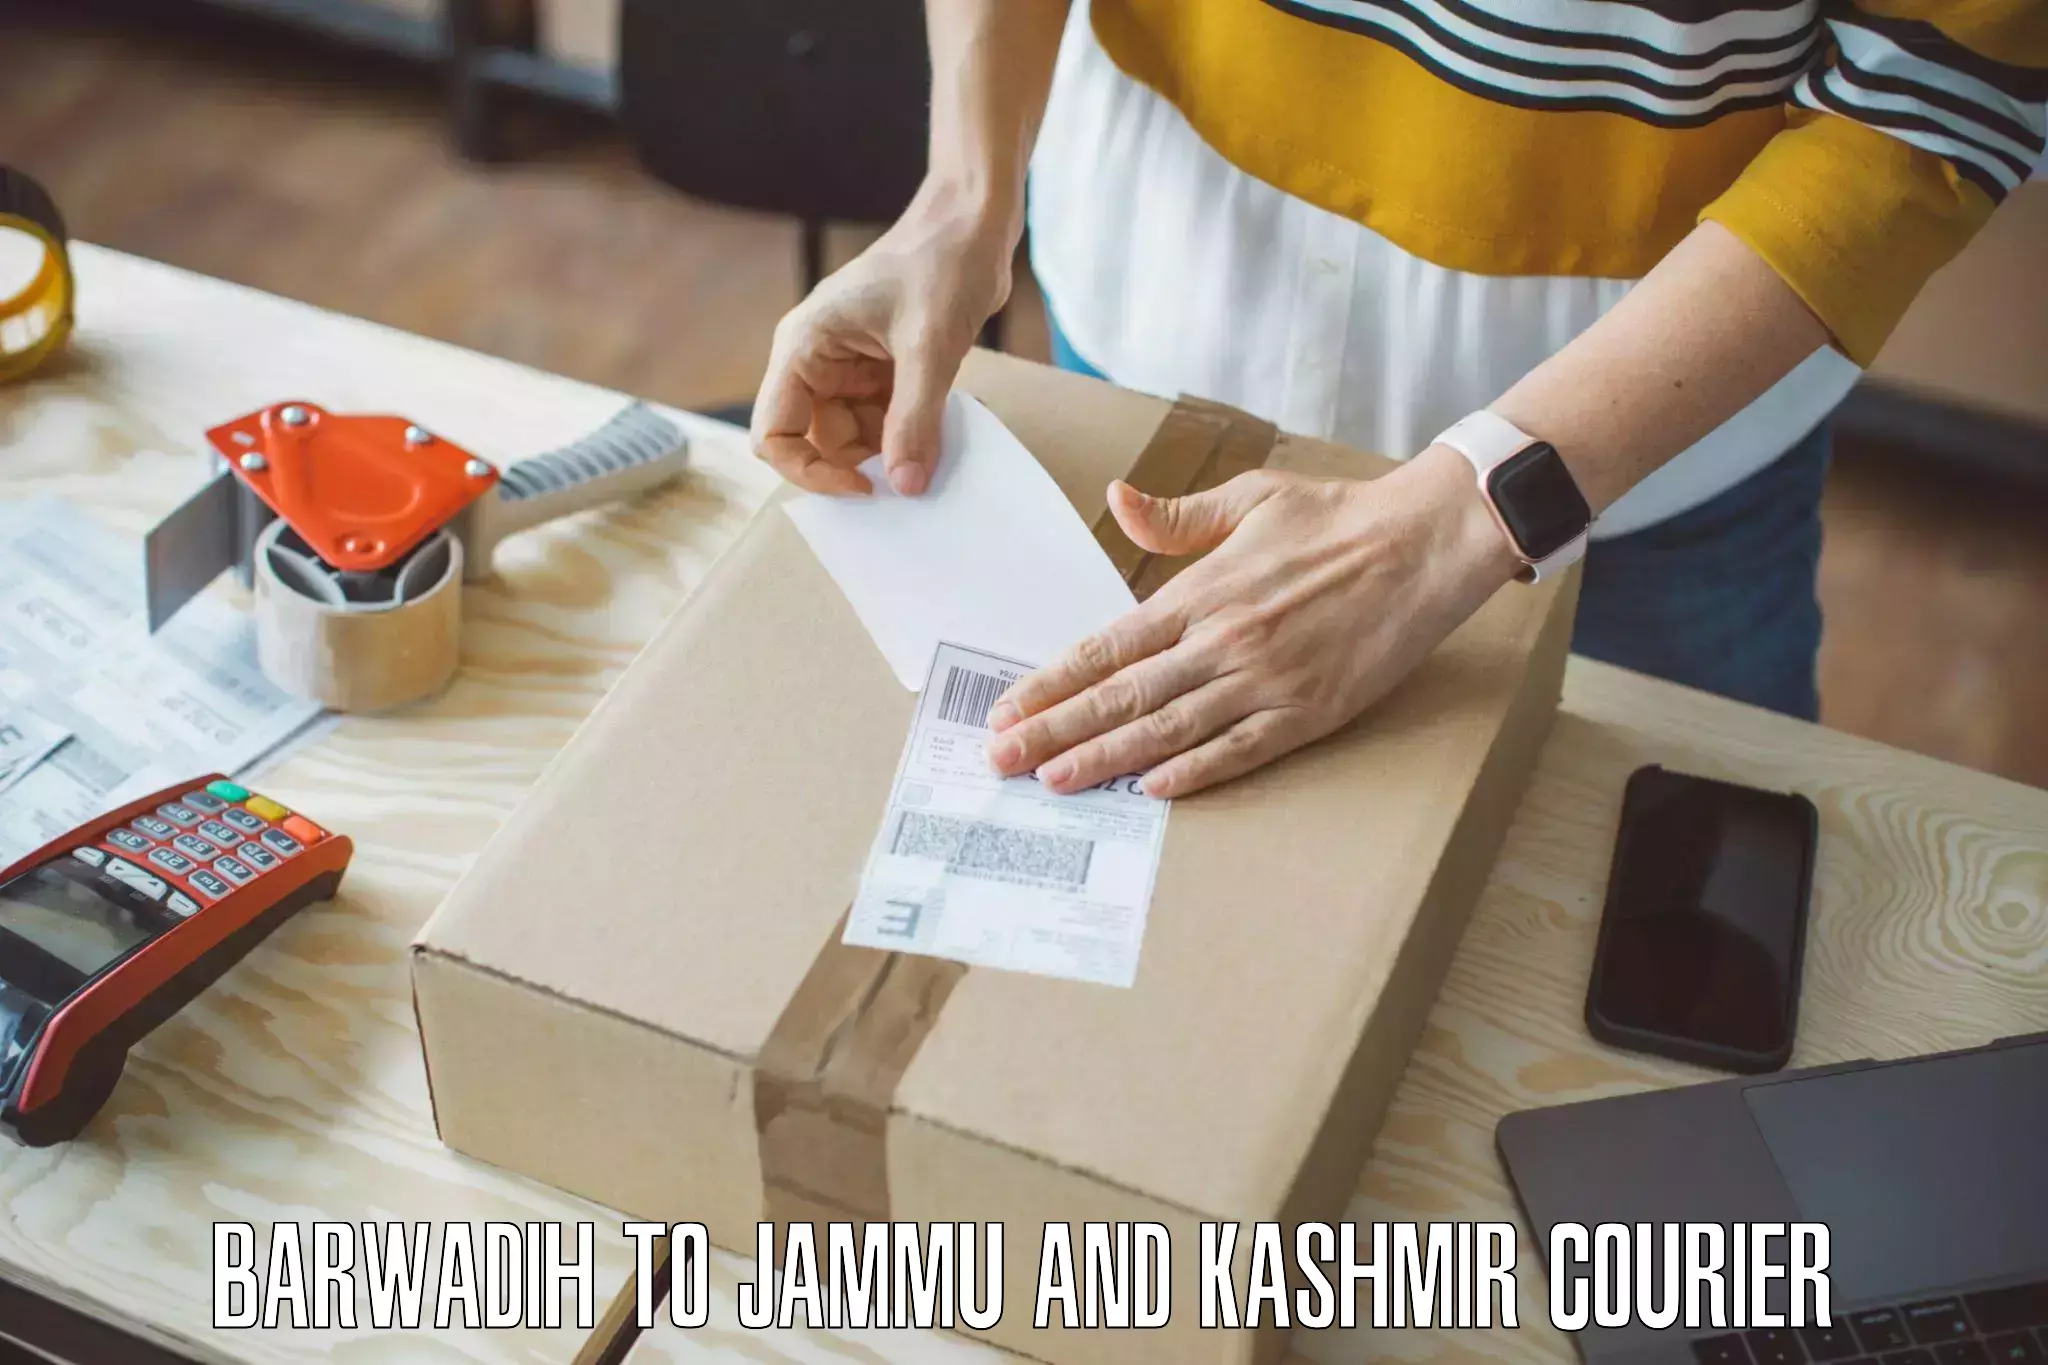 Expert furniture movers Barwadih to University of Jammu